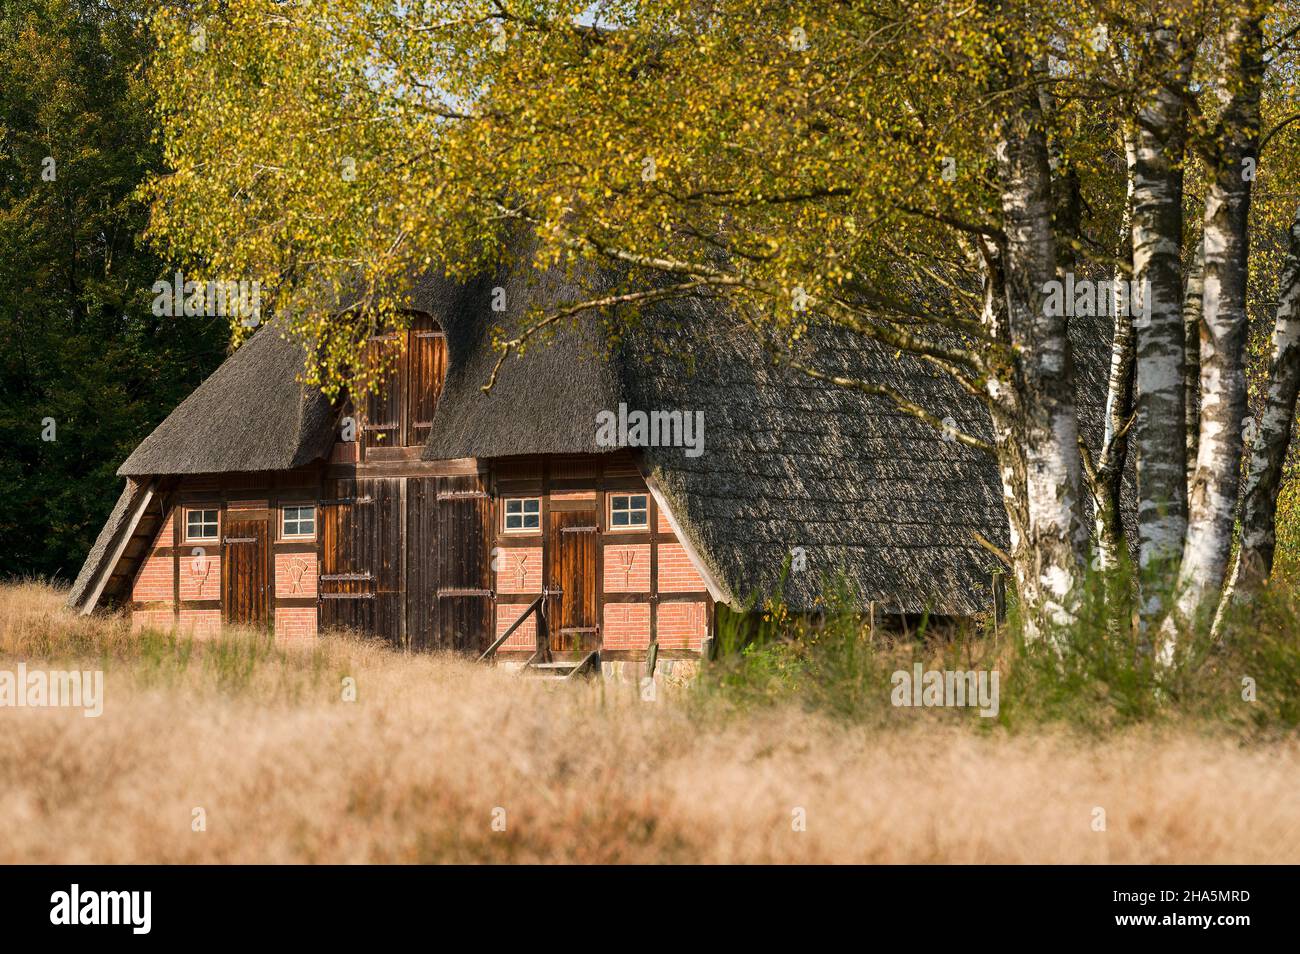 bergerie de chaume et bouleaux d'automne près de timmerloh,près de soltau,réserve naturelle de lande de lüneburg,allemagne,basse-saxe Banque D'Images